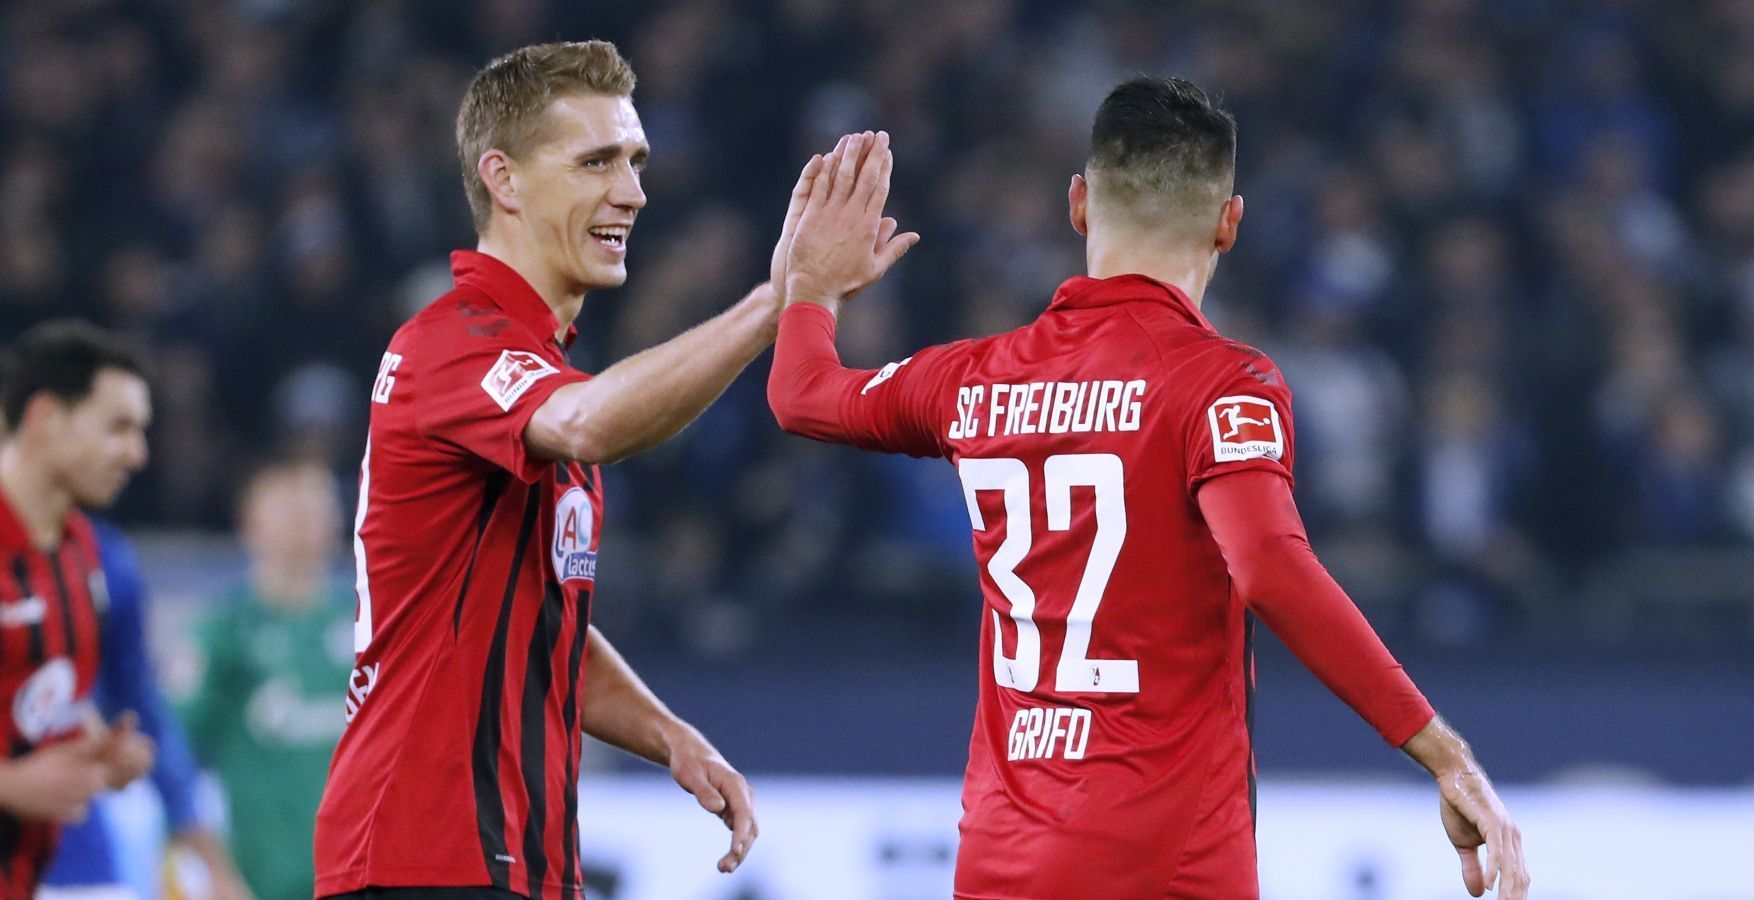 
                <strong>SC Freiburg</strong><br>
                Bundesliga-Rekordtorschütze: Nils Petersen - Bundesliga-Tore: 62 - Vereins-Rekordtorschütze: Nils Petersen - Pflichtspiel-Tore: 94
              